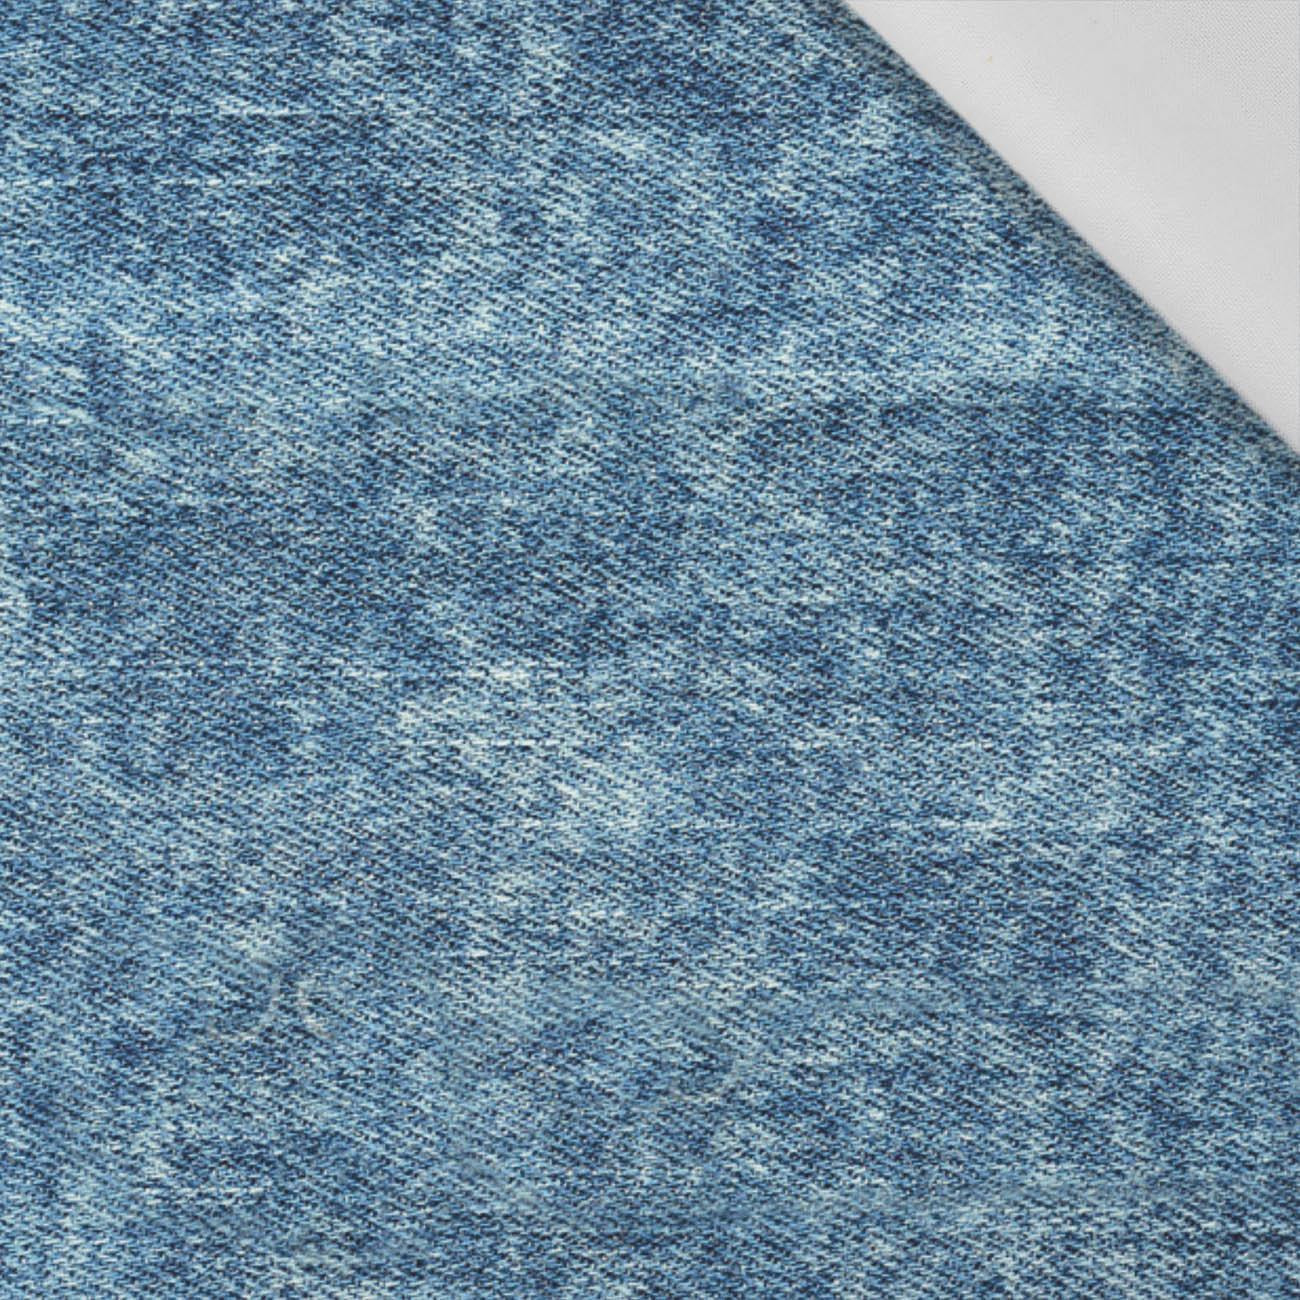 PRZECIERANY JEANS (Atlantic Blue) - tkanina bawełniana